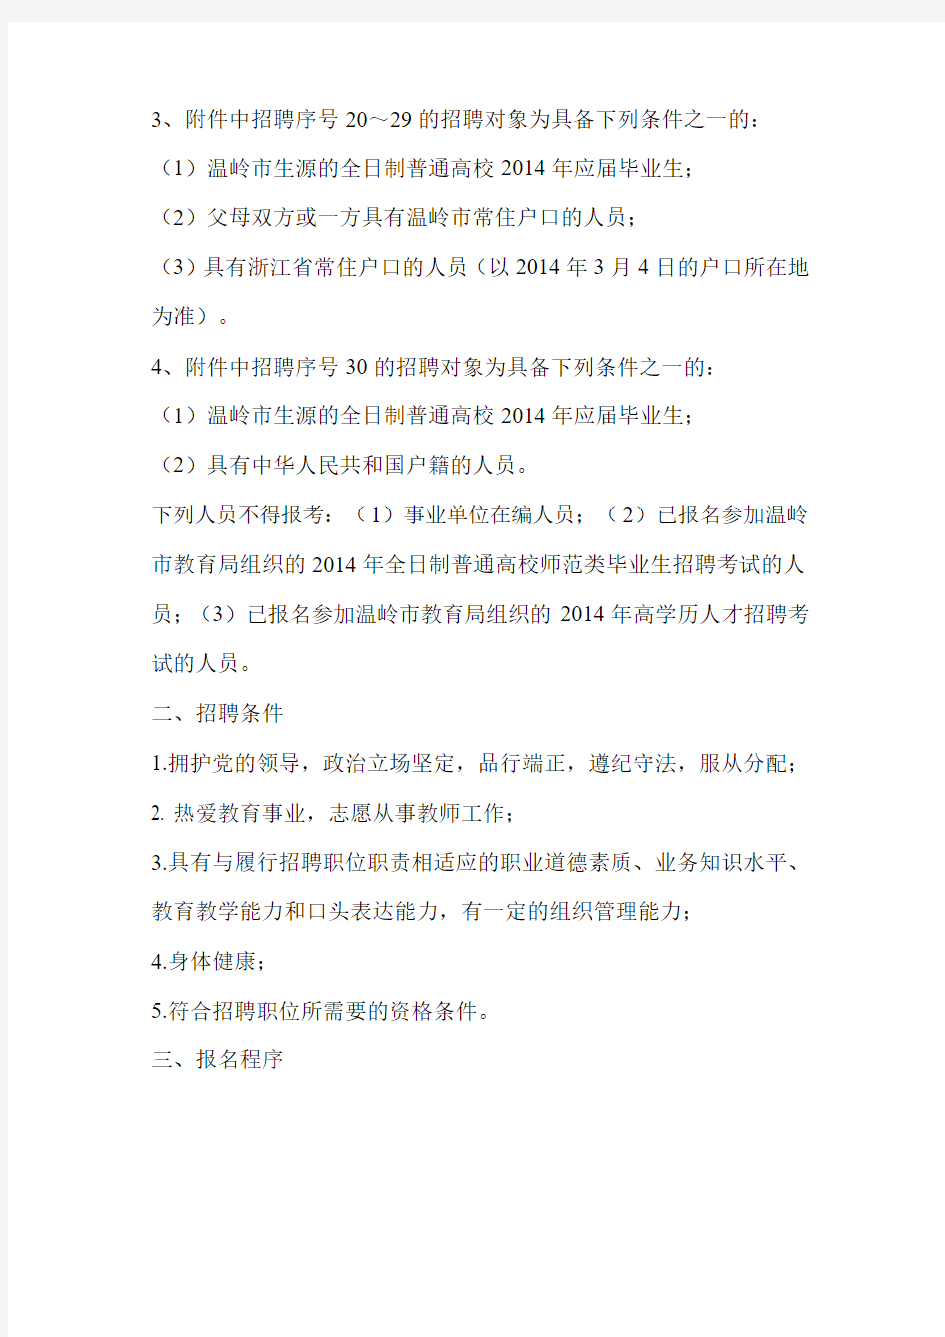 uploadfile3602014年温岭市公开招聘中小学教师公告